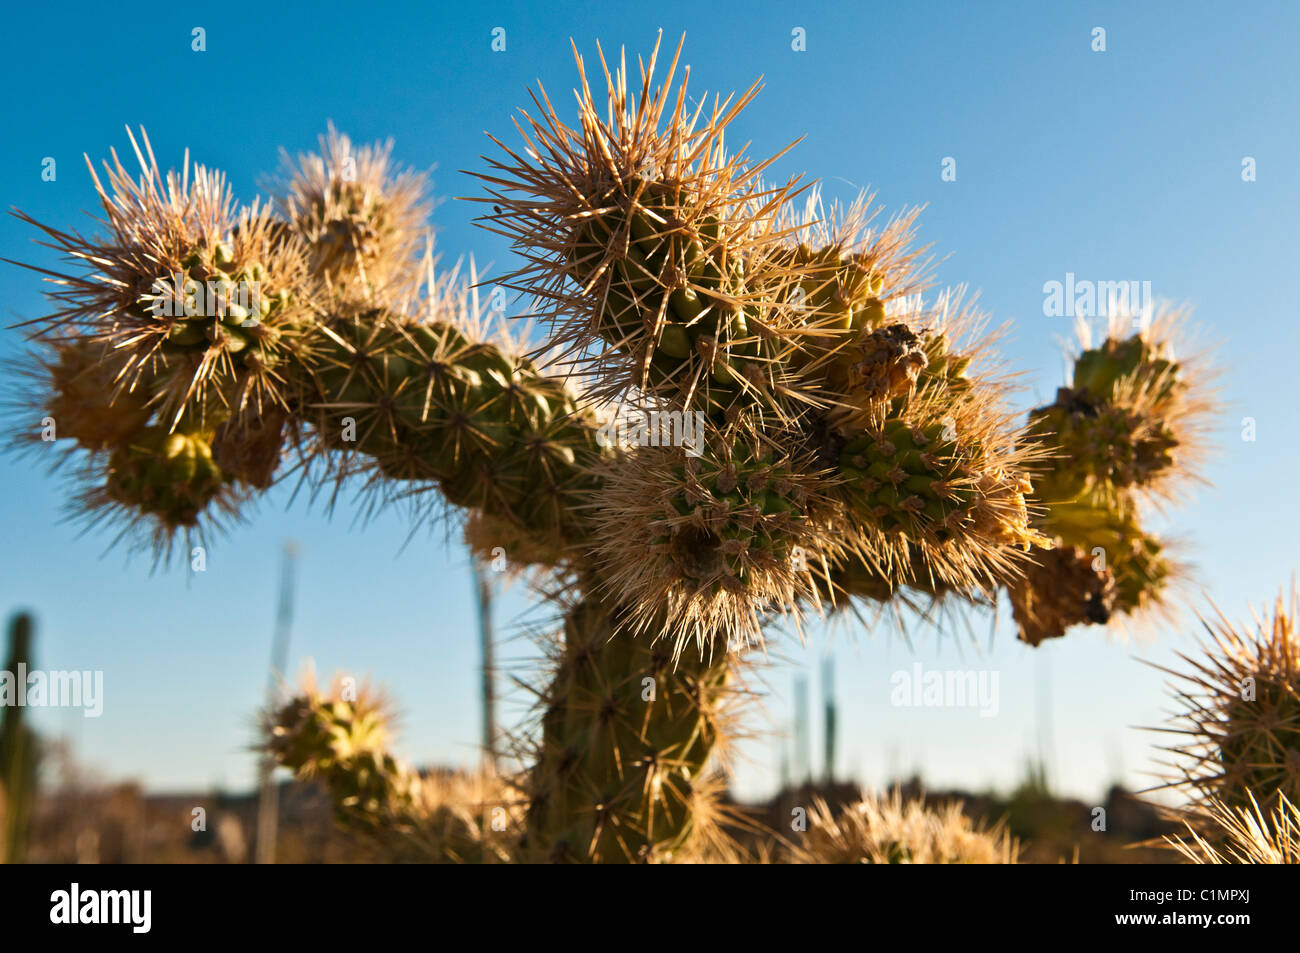 Cholla cactus épineux, Baja California, Mexique Banque D'Images